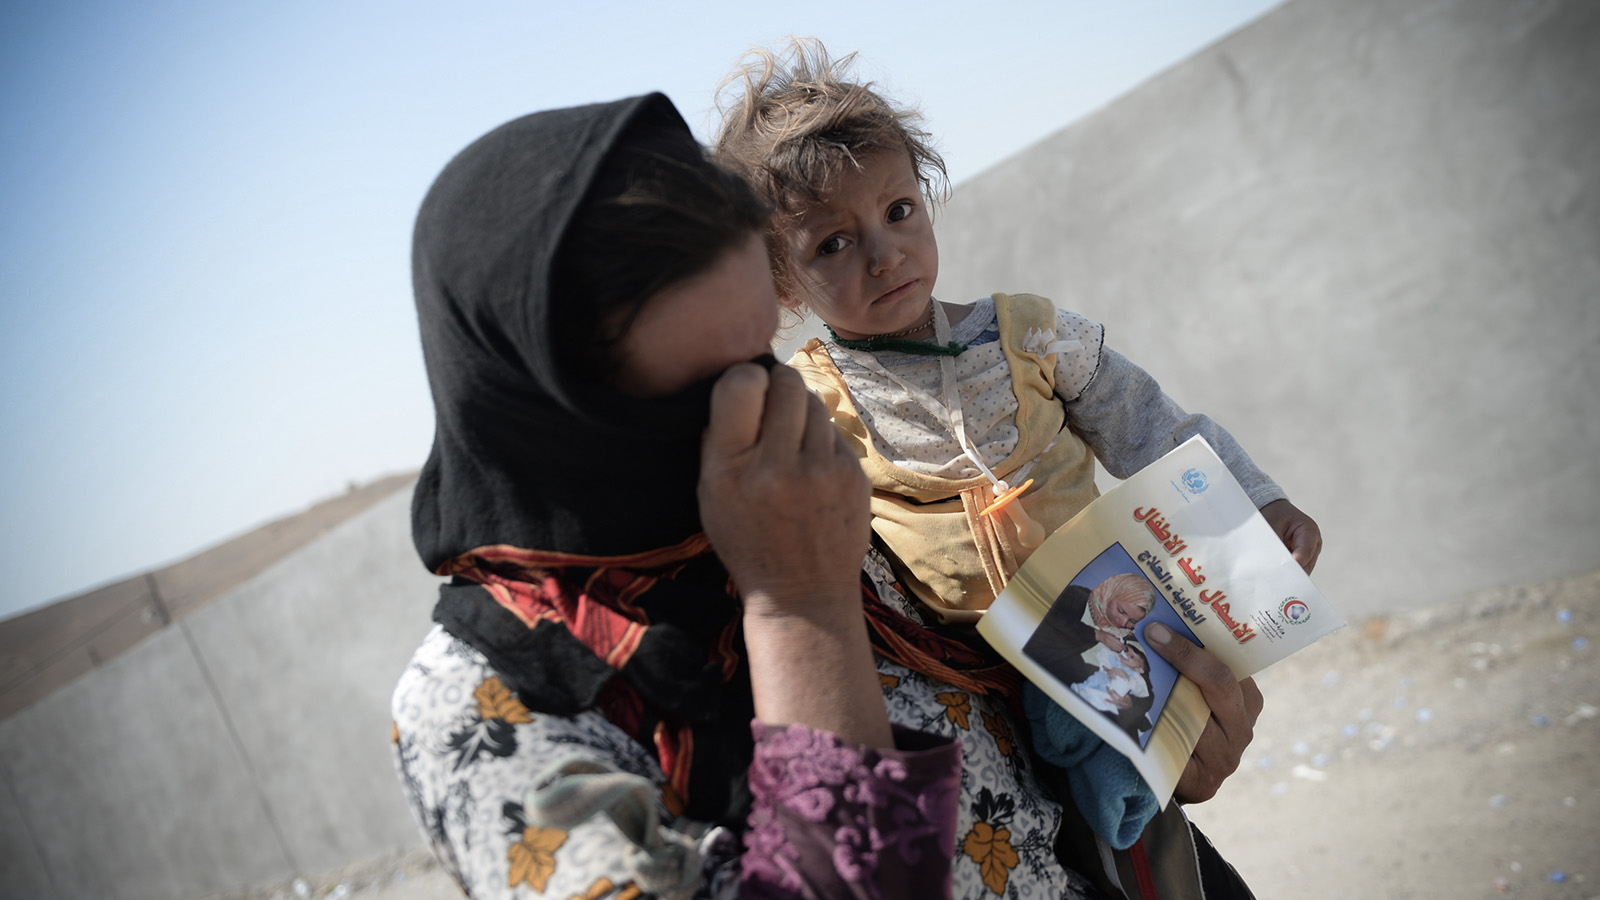 ام ايزيدية هربت من تنظيم الدولة الإسلامية في العراق وبلاد الشام (داعش) في مخيم اللاجئين في كردستان (تصوير من الارشيف: answer5 / Shutterstock).